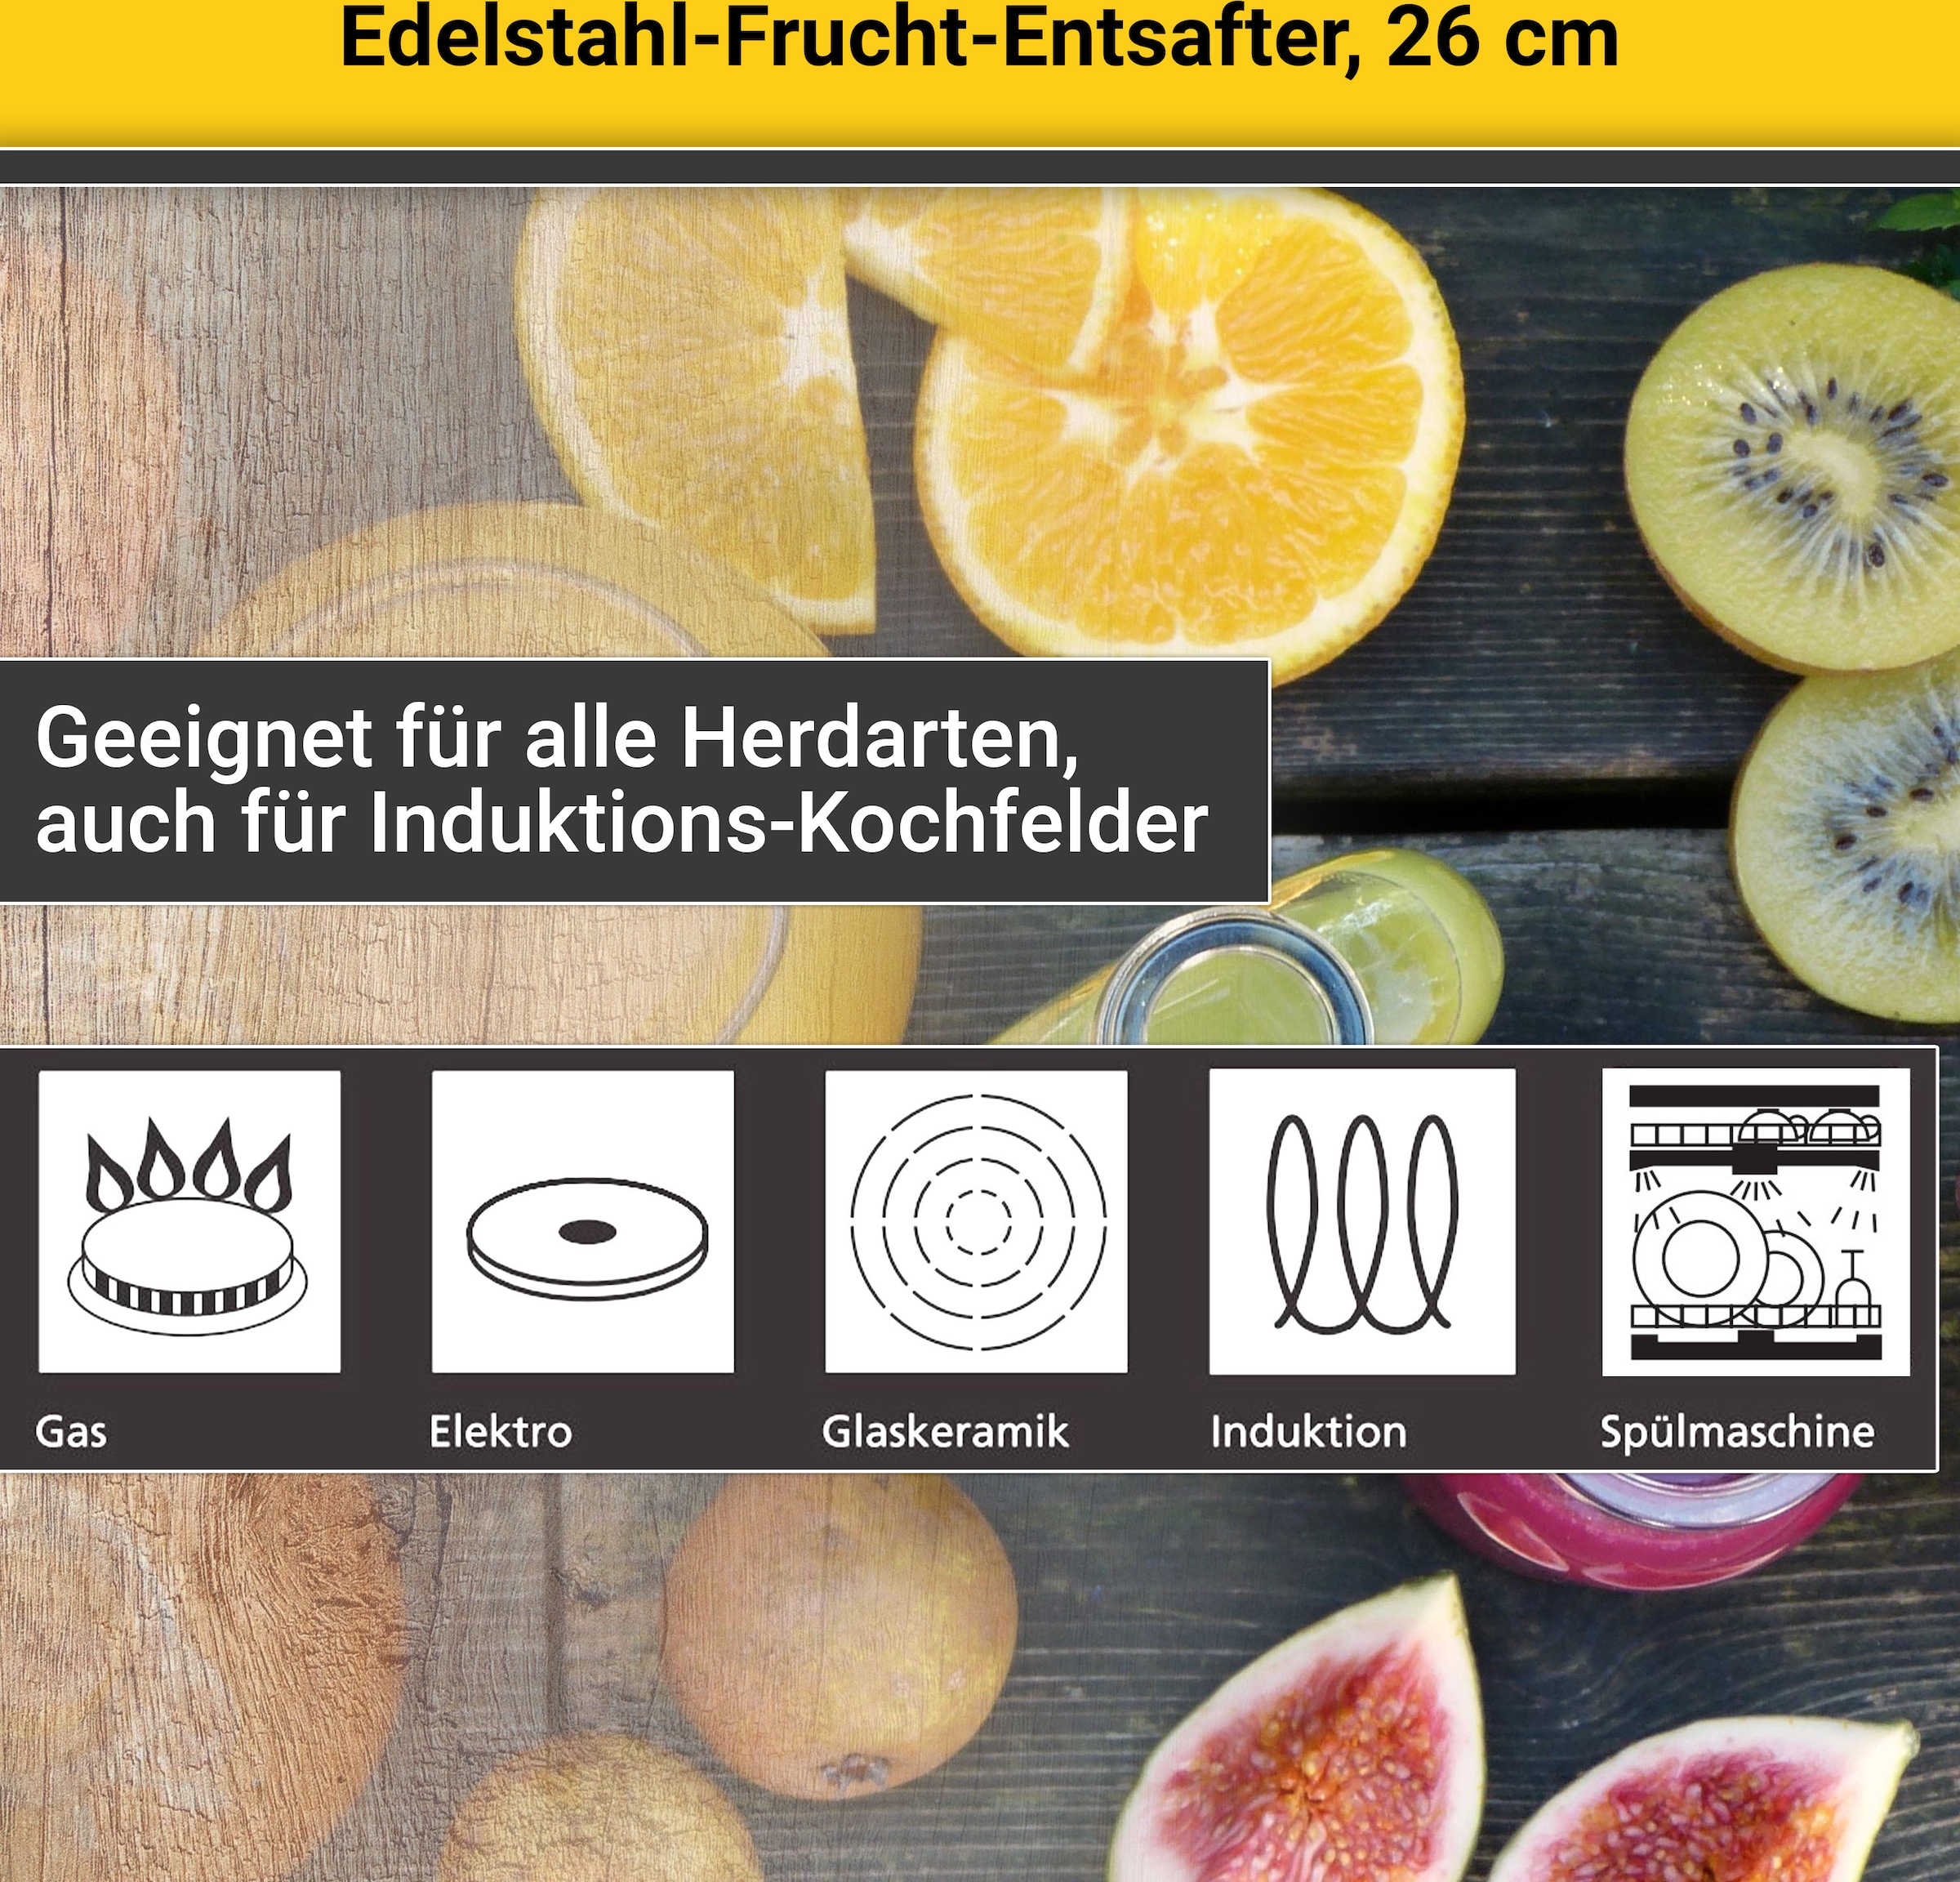 Fruchtentsafter, XXL Edelstahl, 3 Einkochtopf, Garantie mit Krüger Induktion Jahren